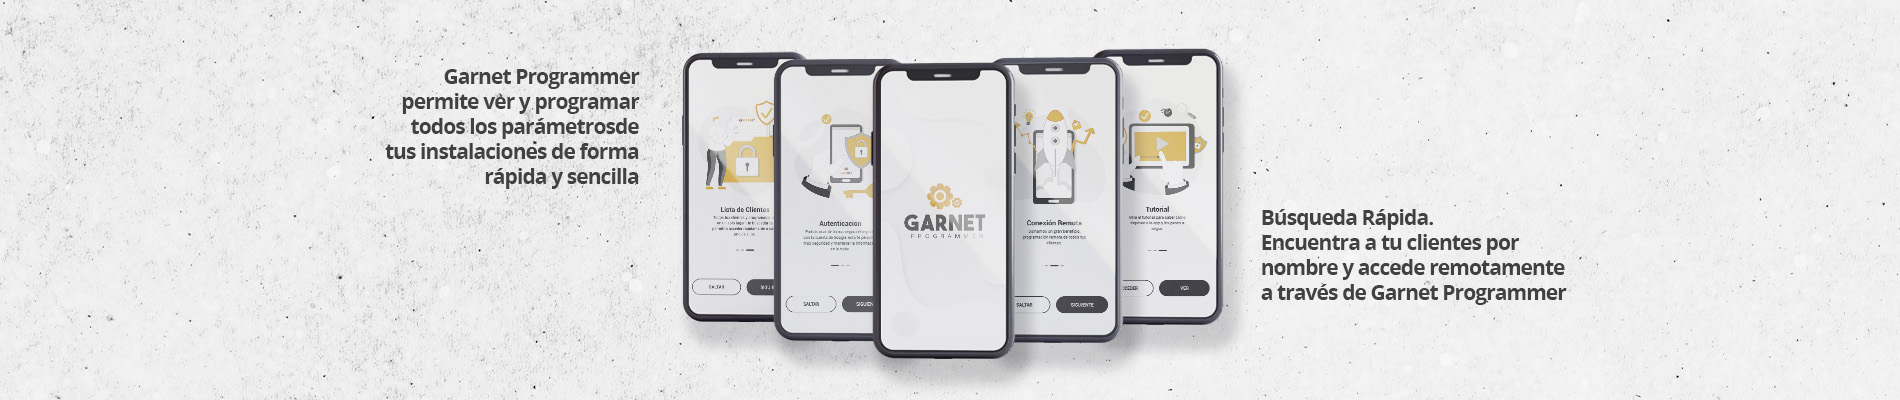 Nueva versión de la App Garnet Programmer de Garnet Technology